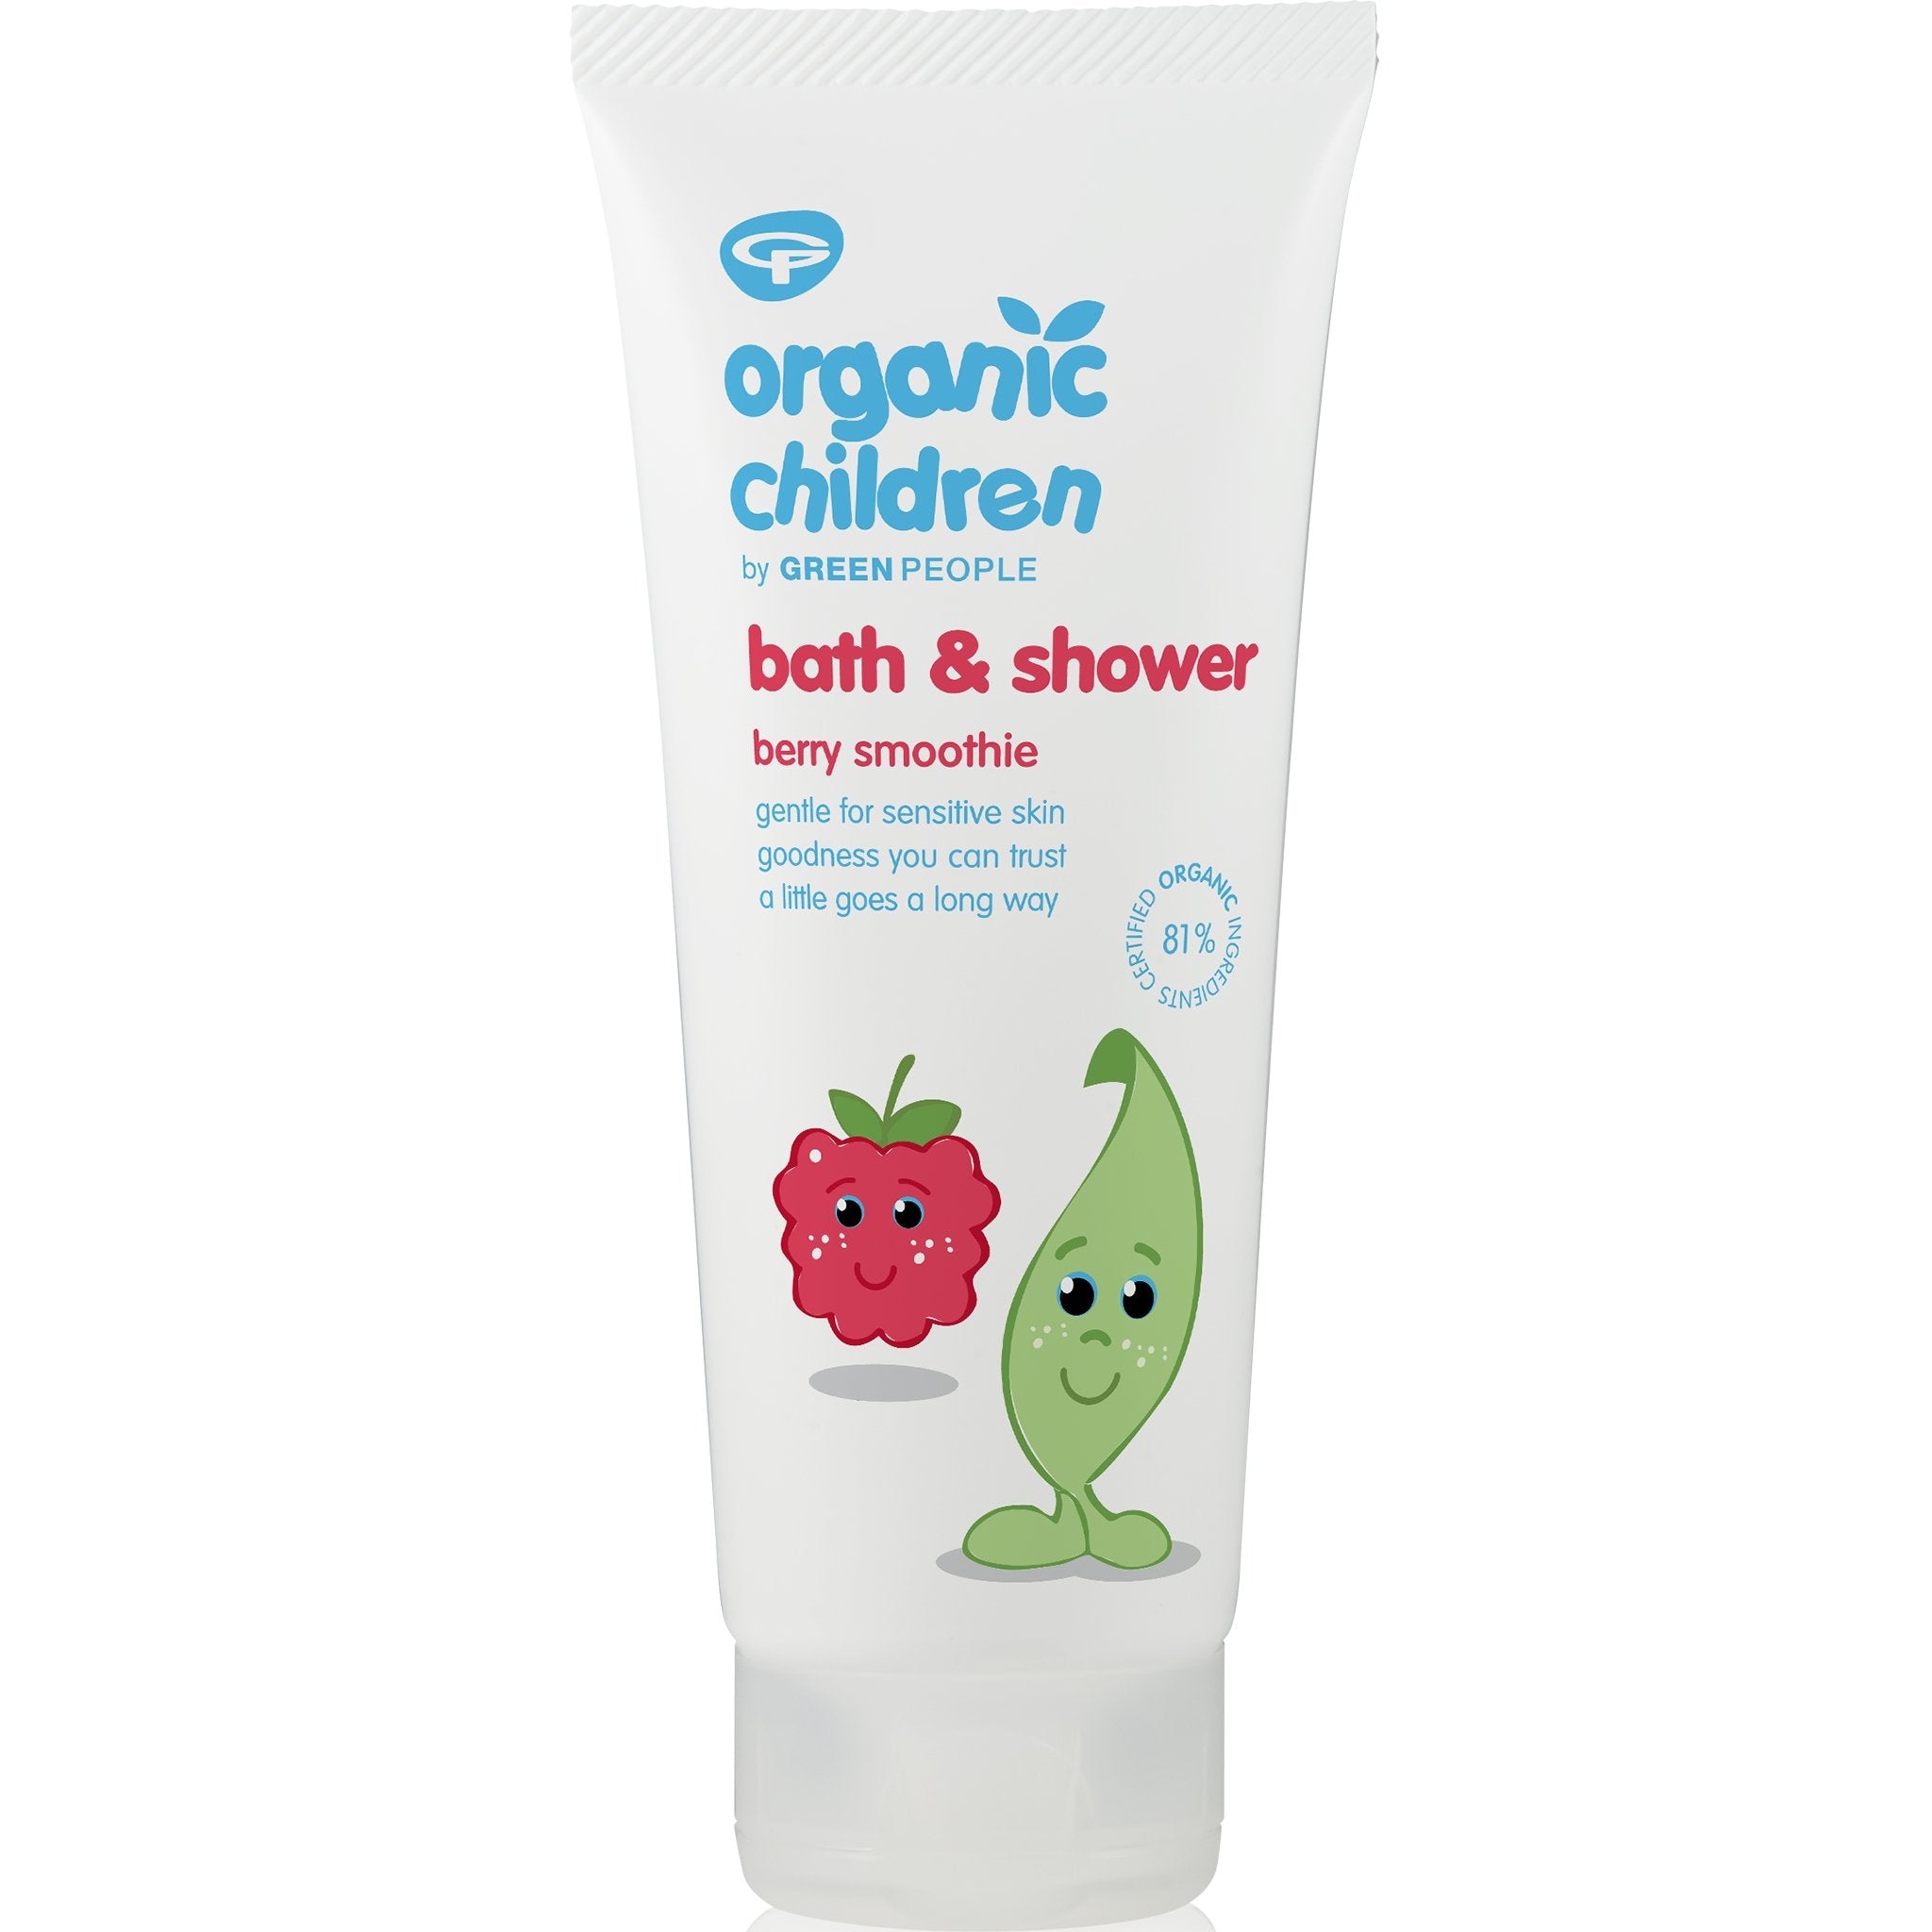 Organic Children Bath & Shower - Berry Smoothie - mypure.co.uk